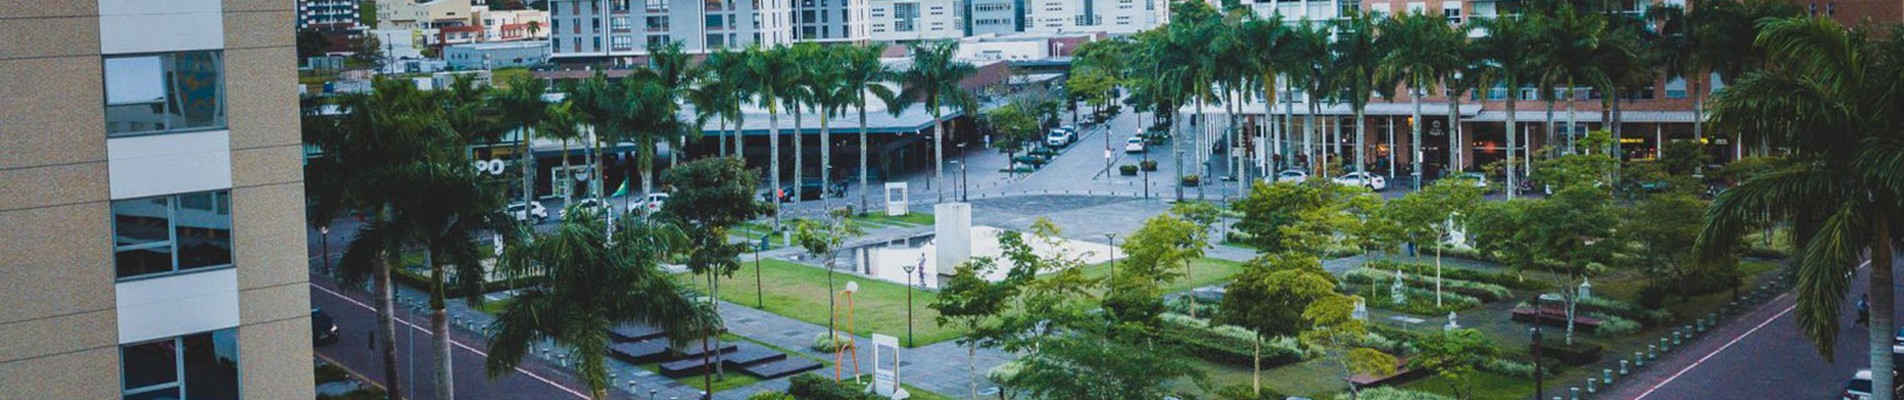 Bairro-cidade inteligente em Santa Catarina torna-se referência em sustentabilidade